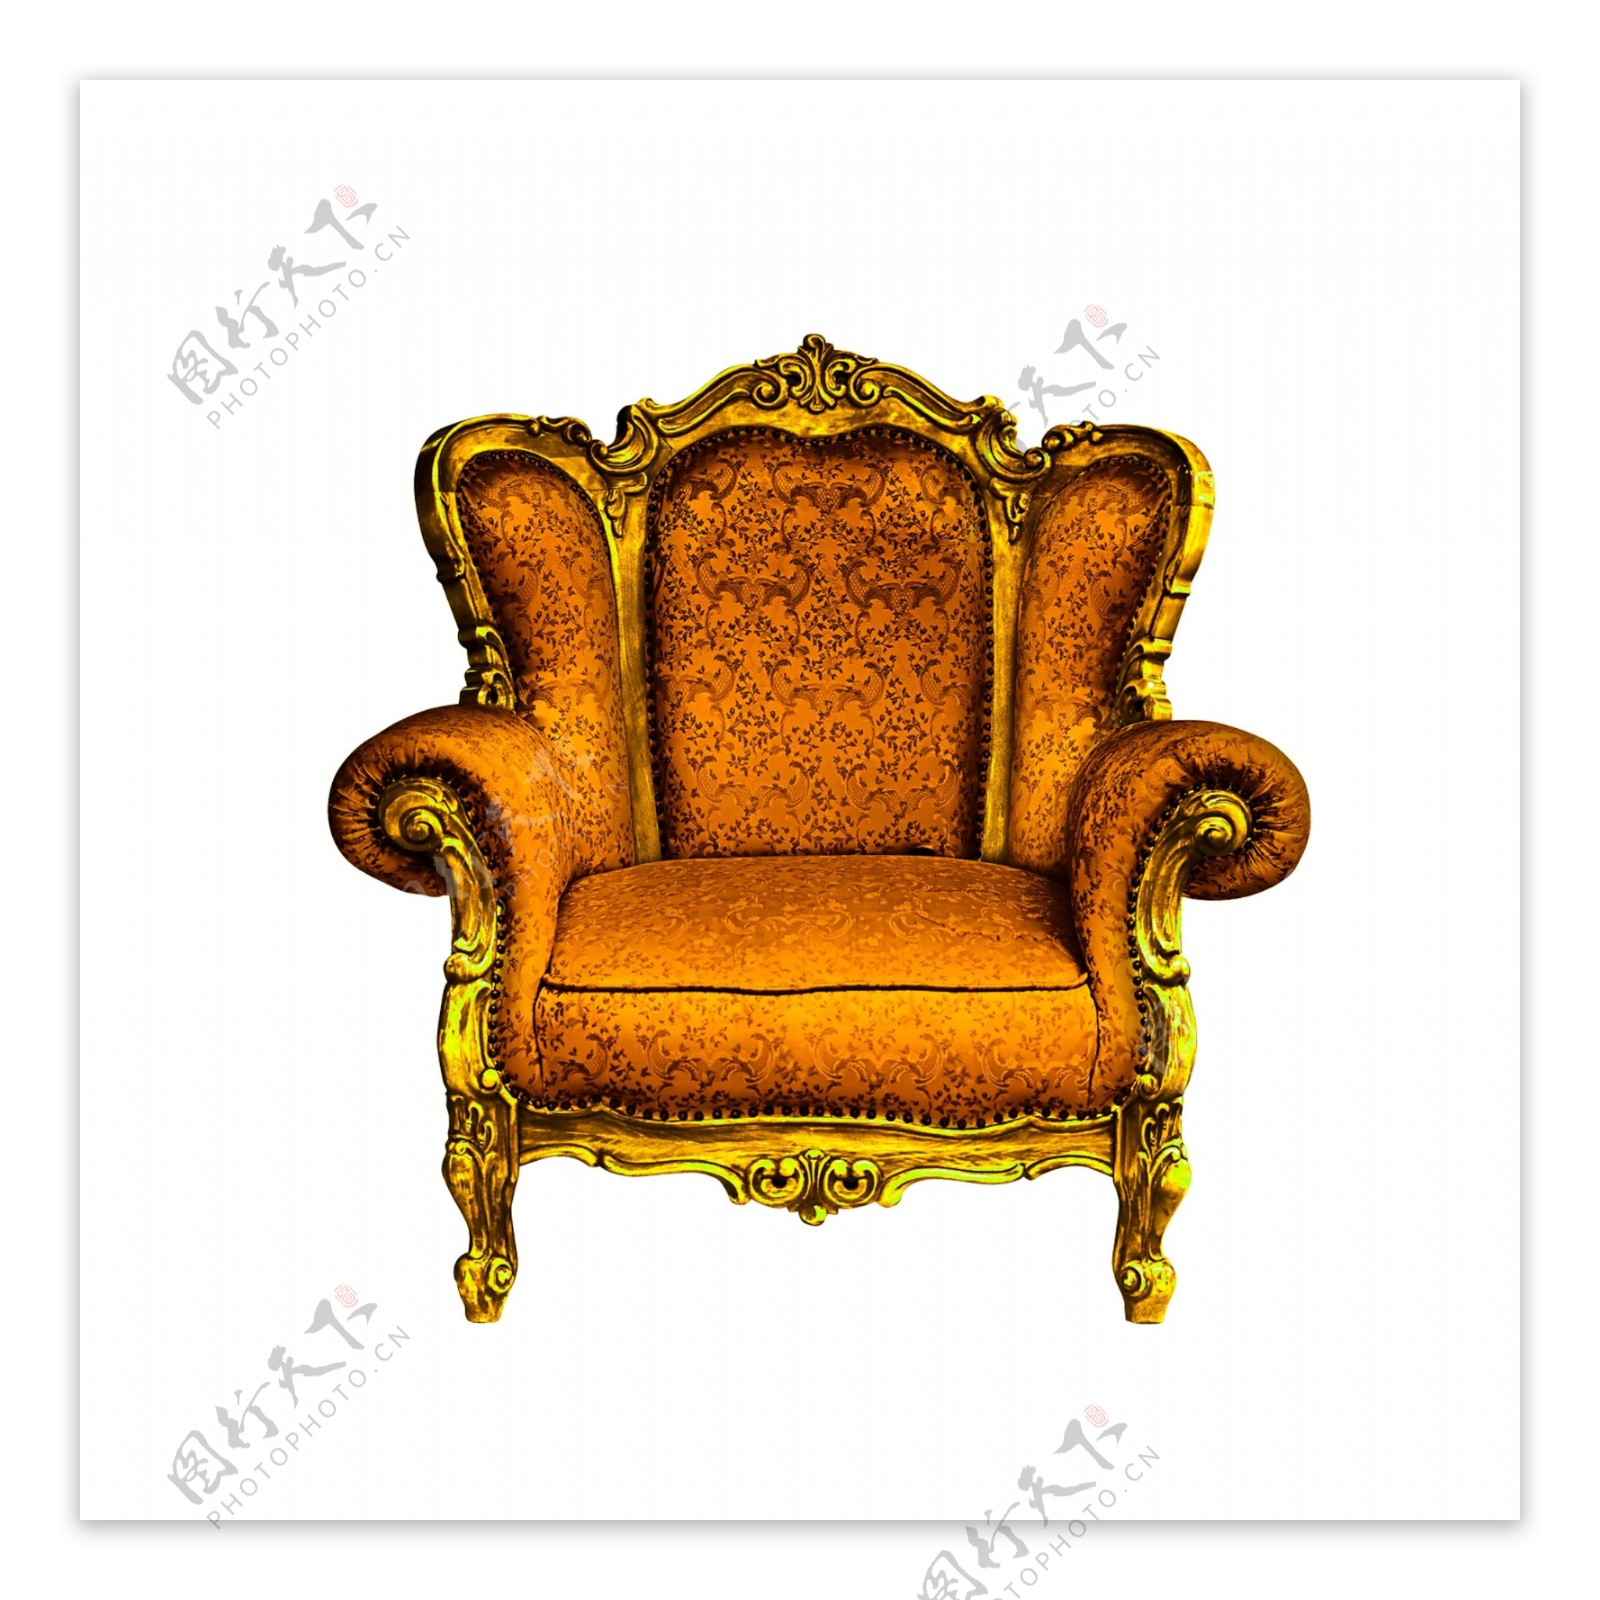 黄金色座椅图片